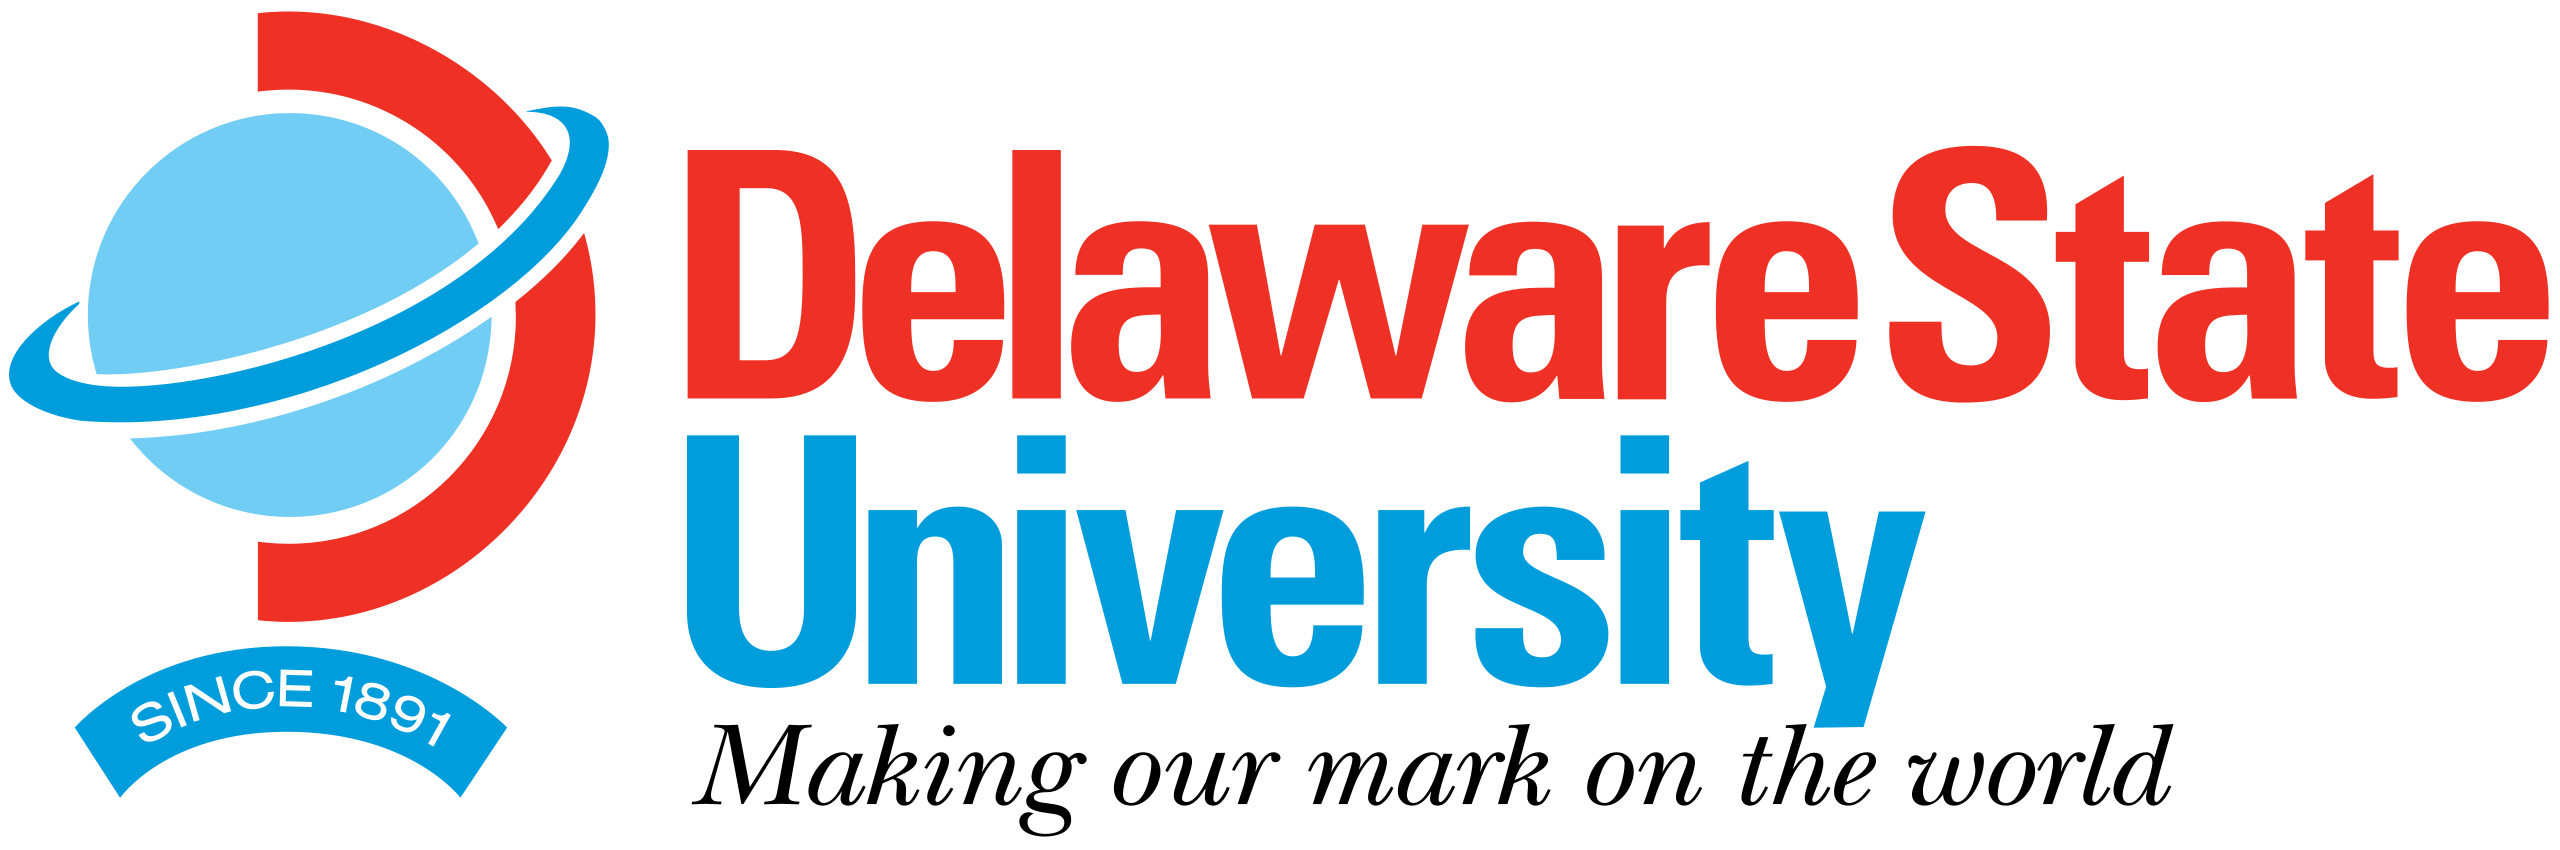 logo for Delaware State University